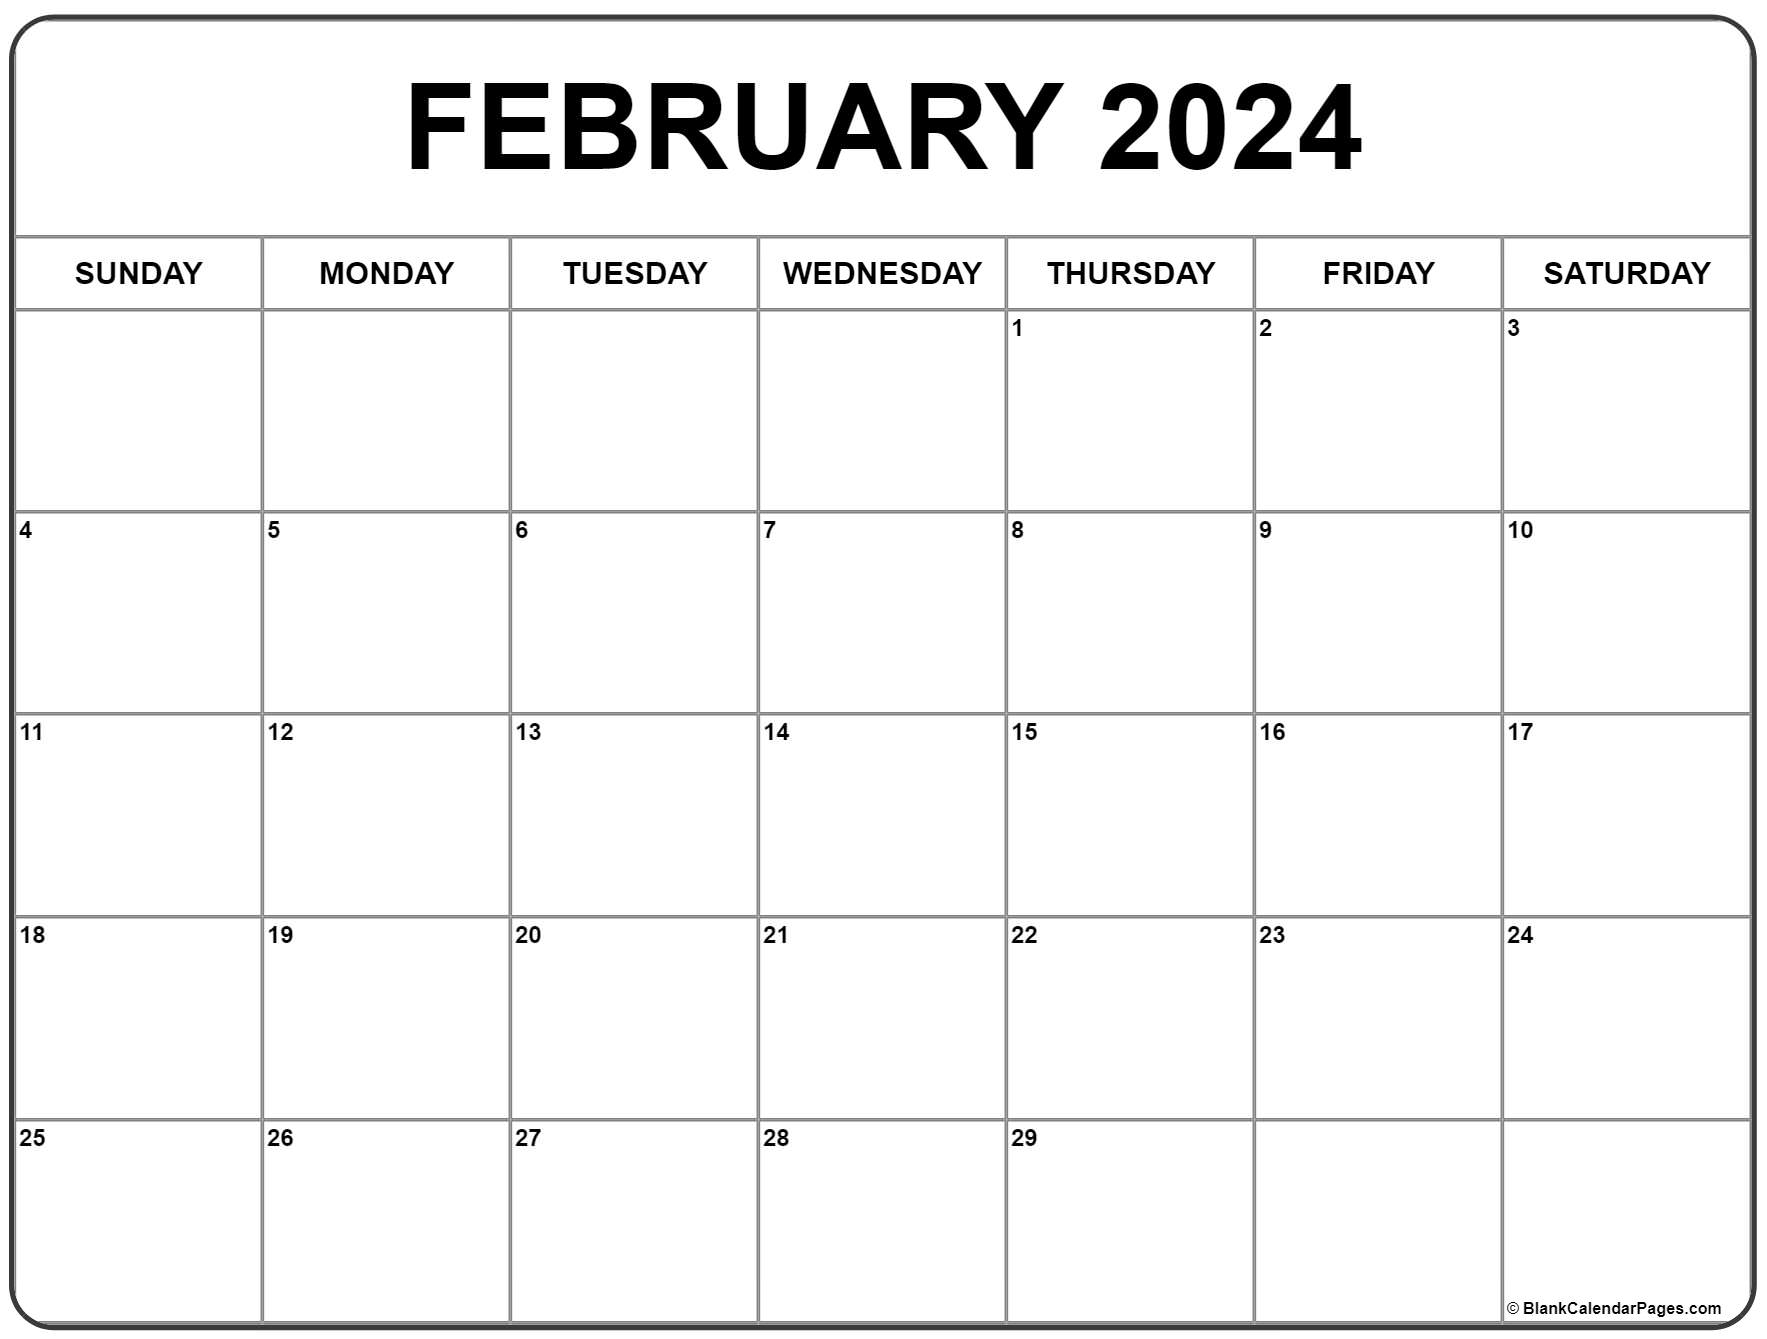 February 2024 Calendar | Free Printable Calendar for Free Printable Calendar 2024 February